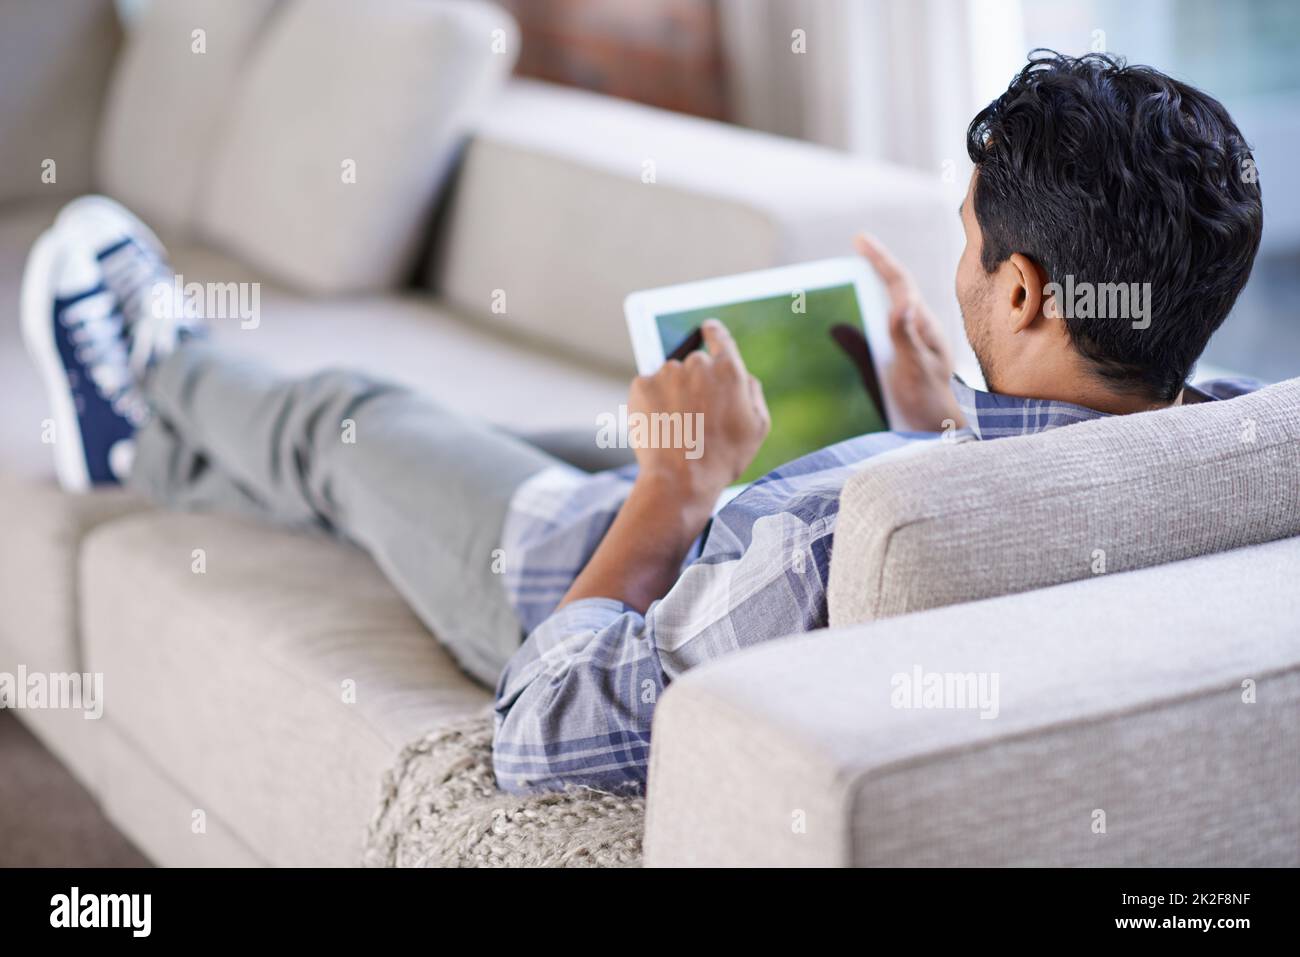 Zum Springen antippen. Eine kurze Aufnahme eines jungen Mannes, der sein Tablet benutzt, während er sich zu Hause entspannt. Stockfoto